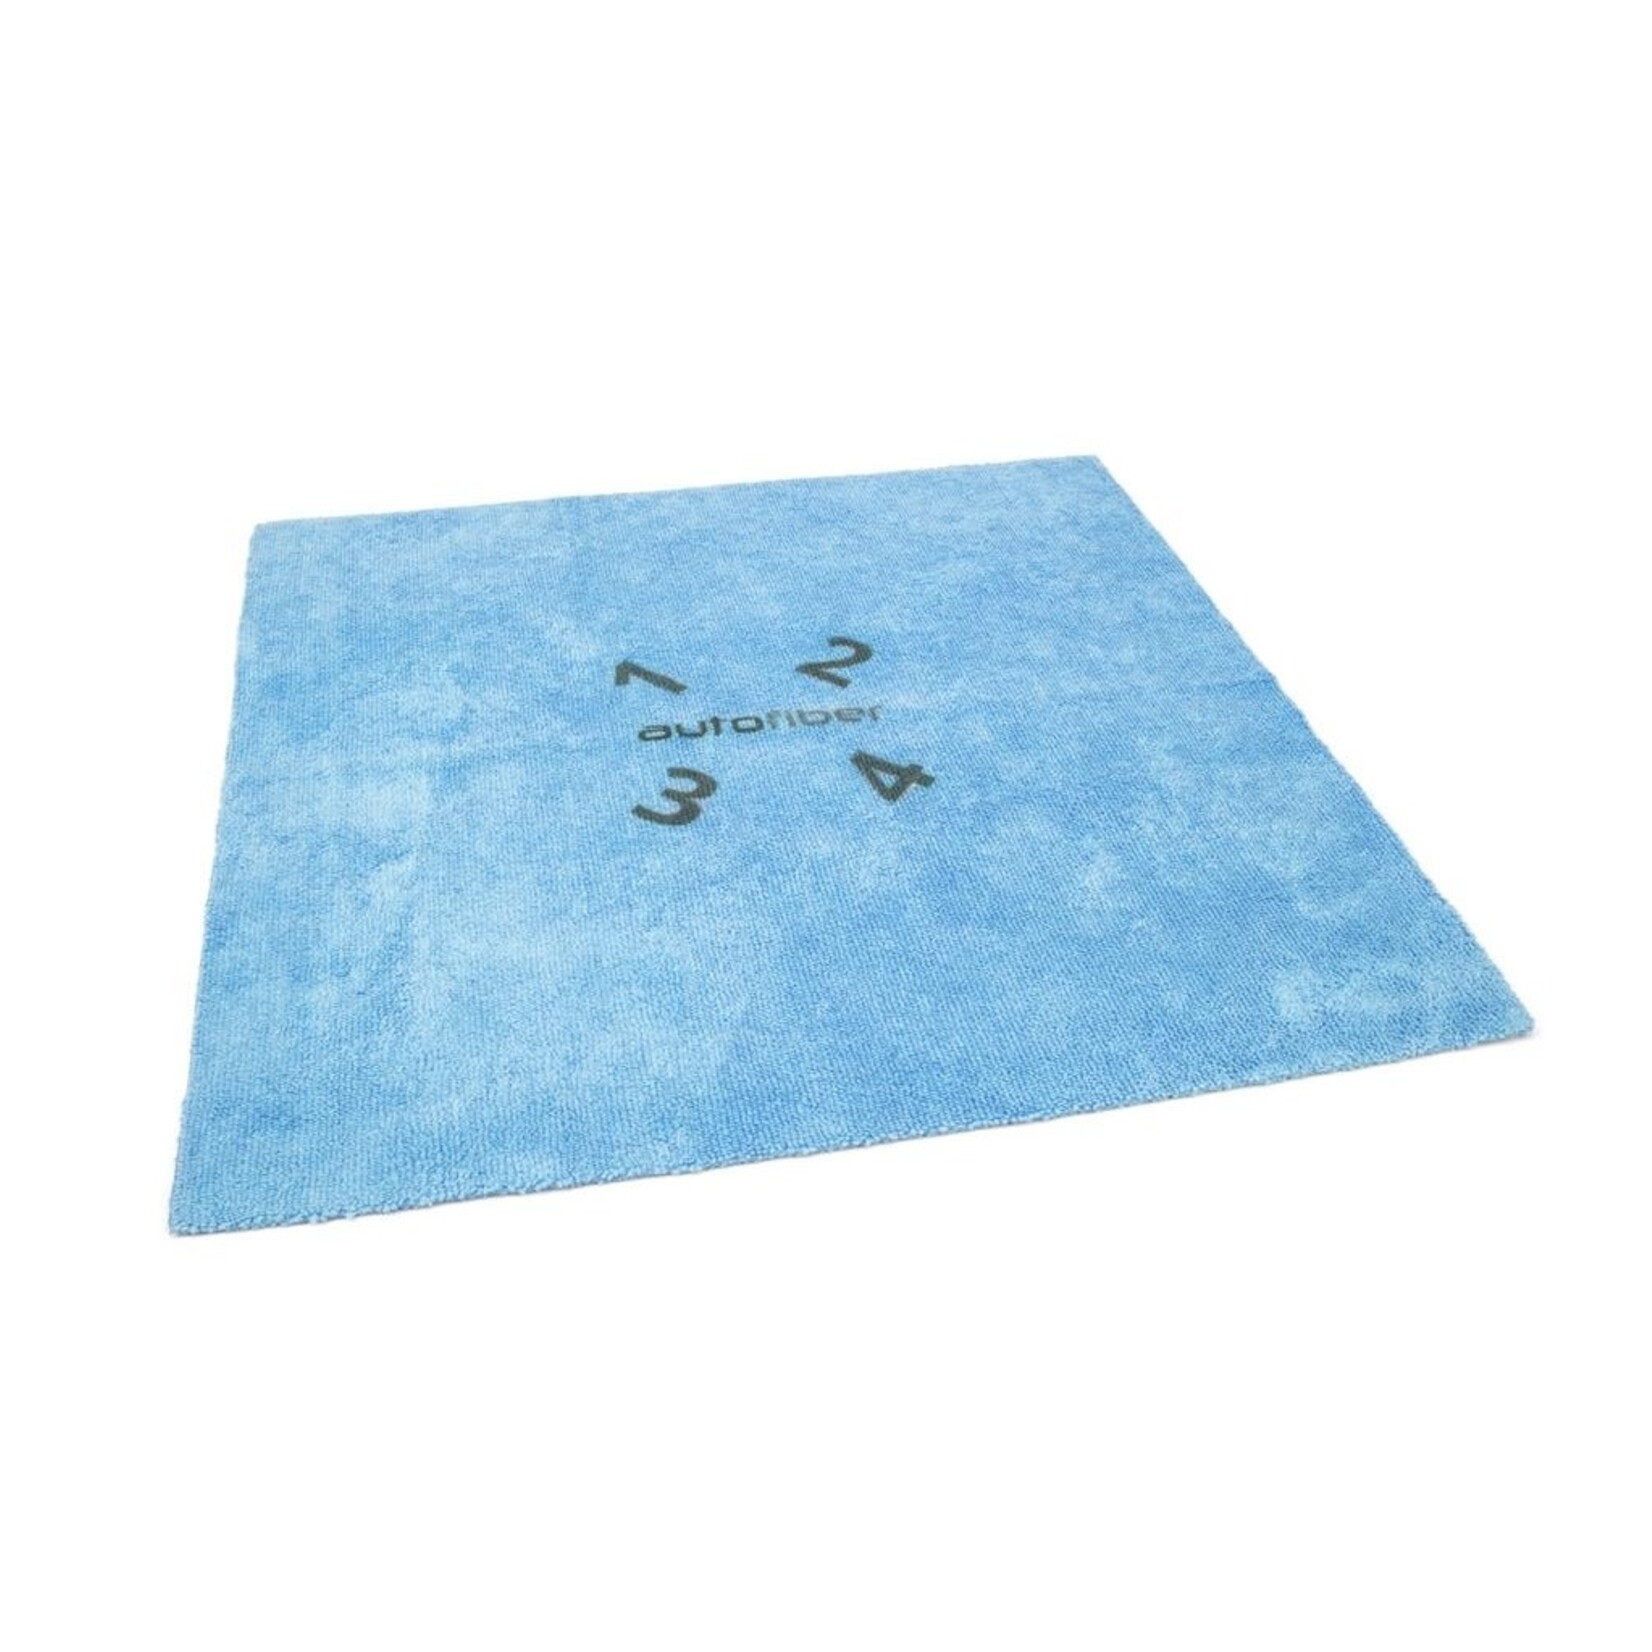 AutoFiber AutoFiber - Quadrant Coating Leveling Towel (Blue)